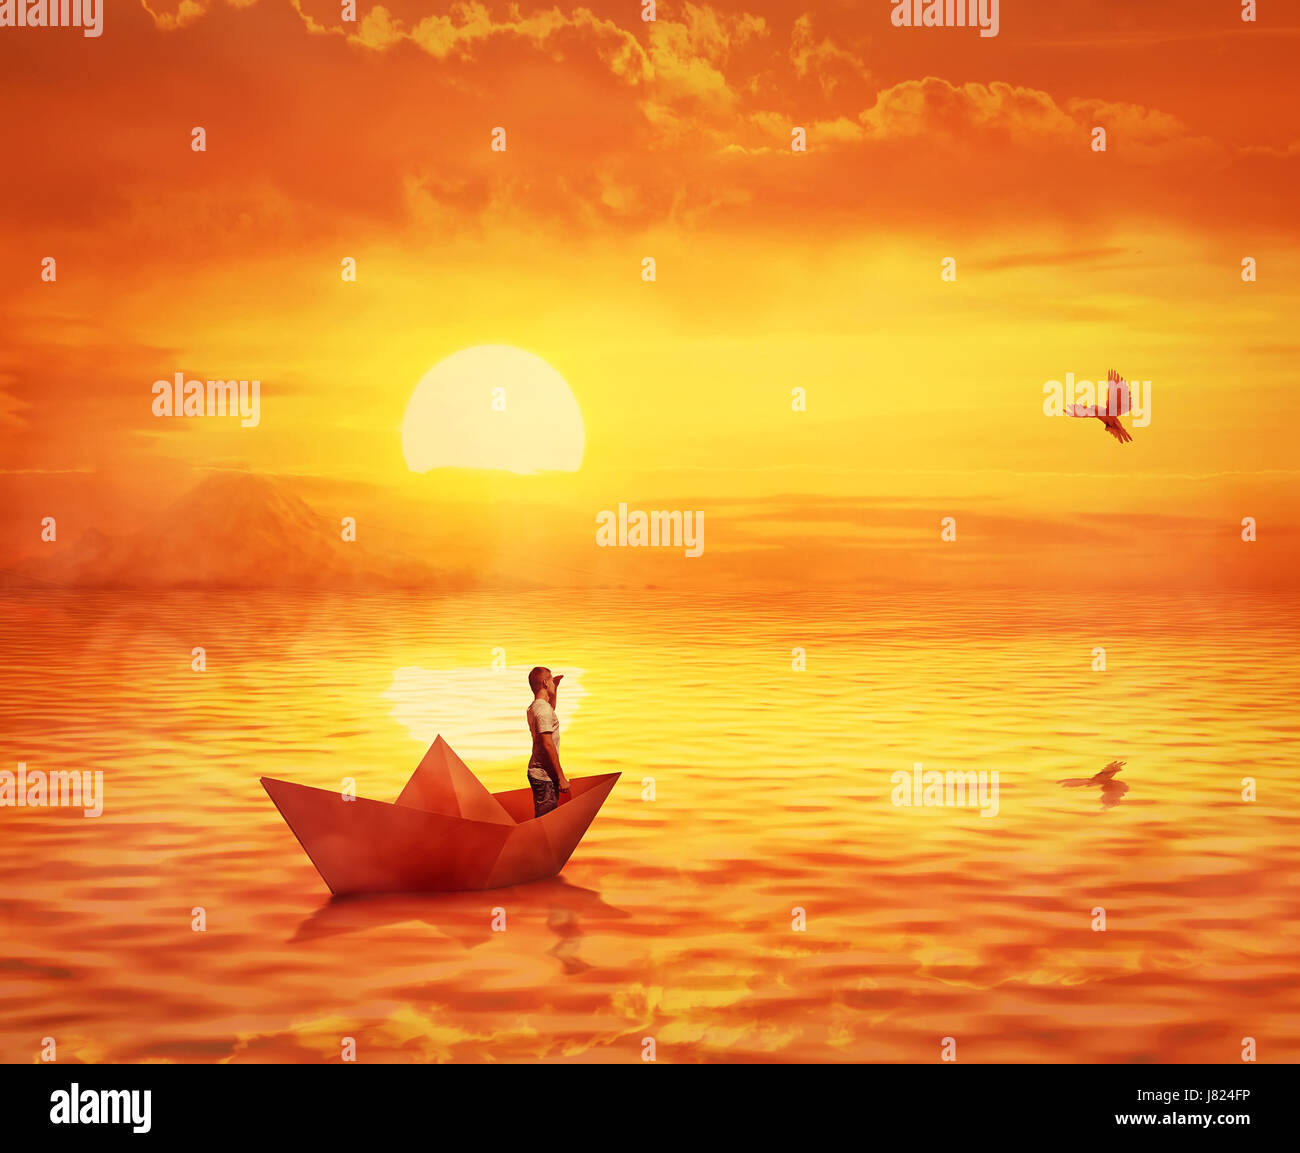 Silueta de un solitario chico en un barco de papel perdido en el océano, contra el cielo del atardecer naranja y una paloma volando para encontrar la orilla. Aventura y j Foto de stock